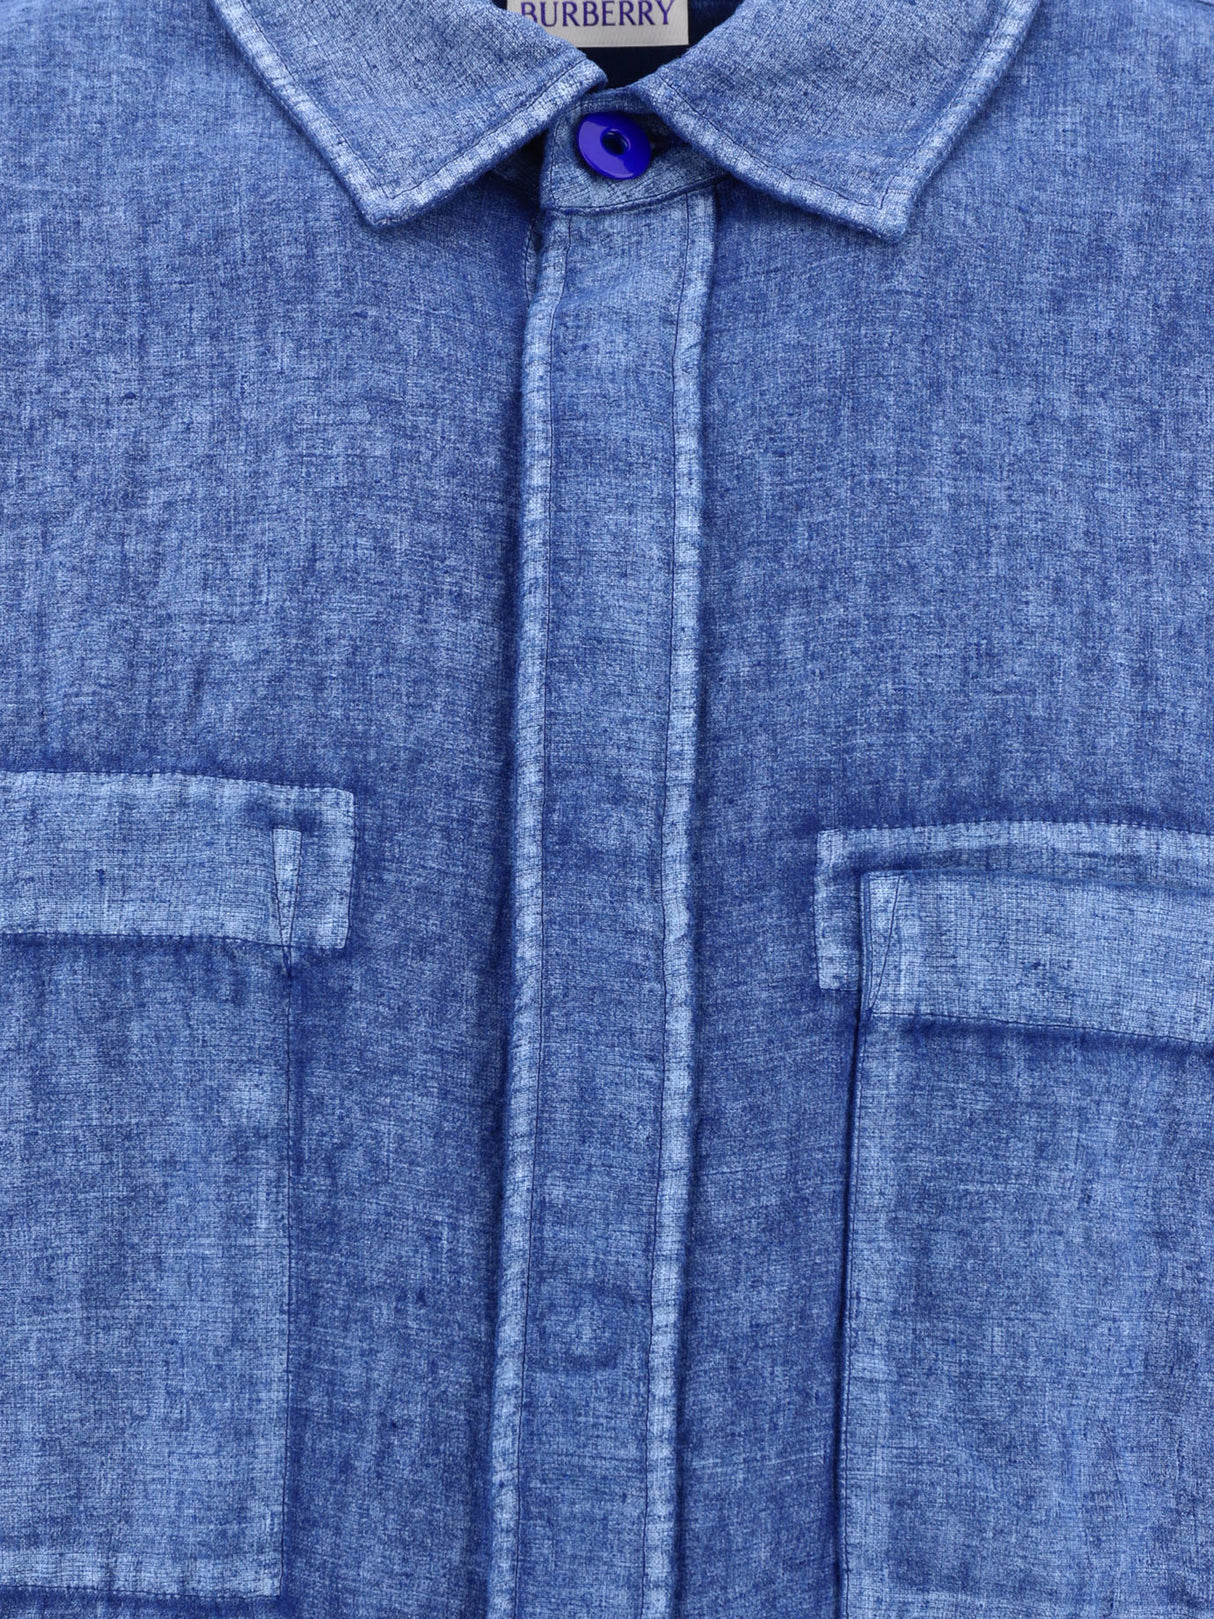 男士淡藍色亞麻襯衫 - SS24系列